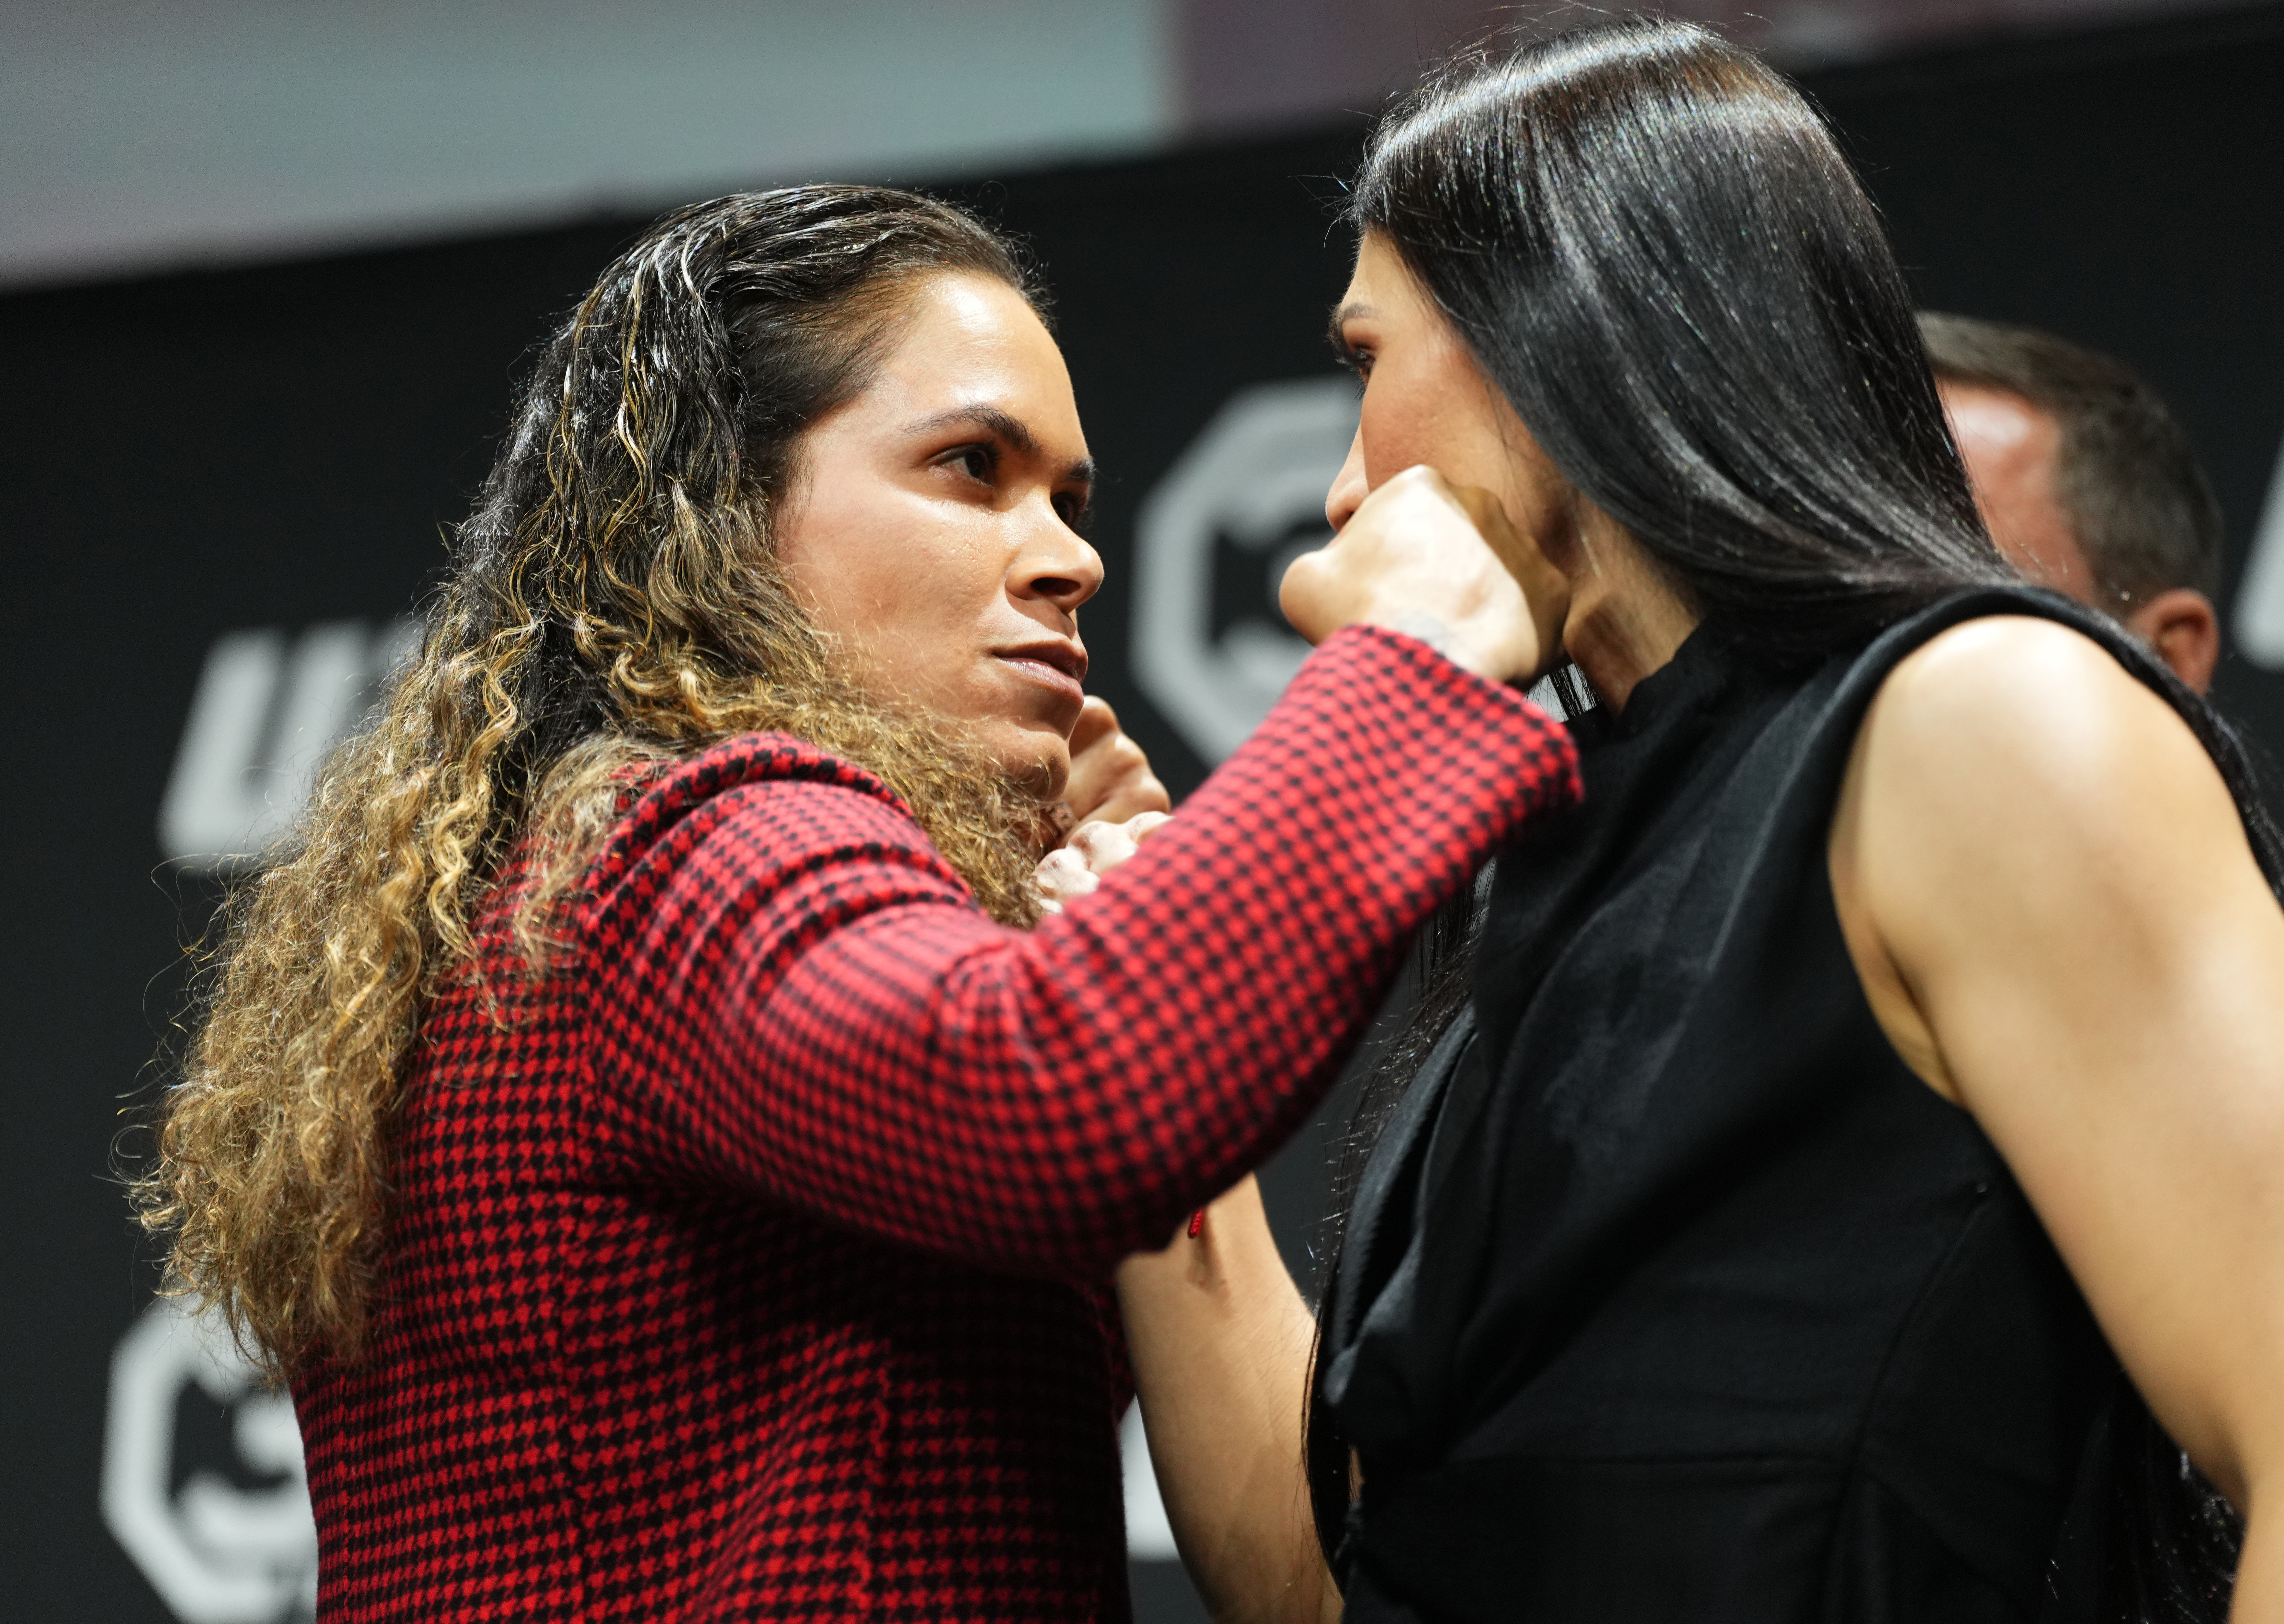 Amanda Nunes and Irene Aldana face off